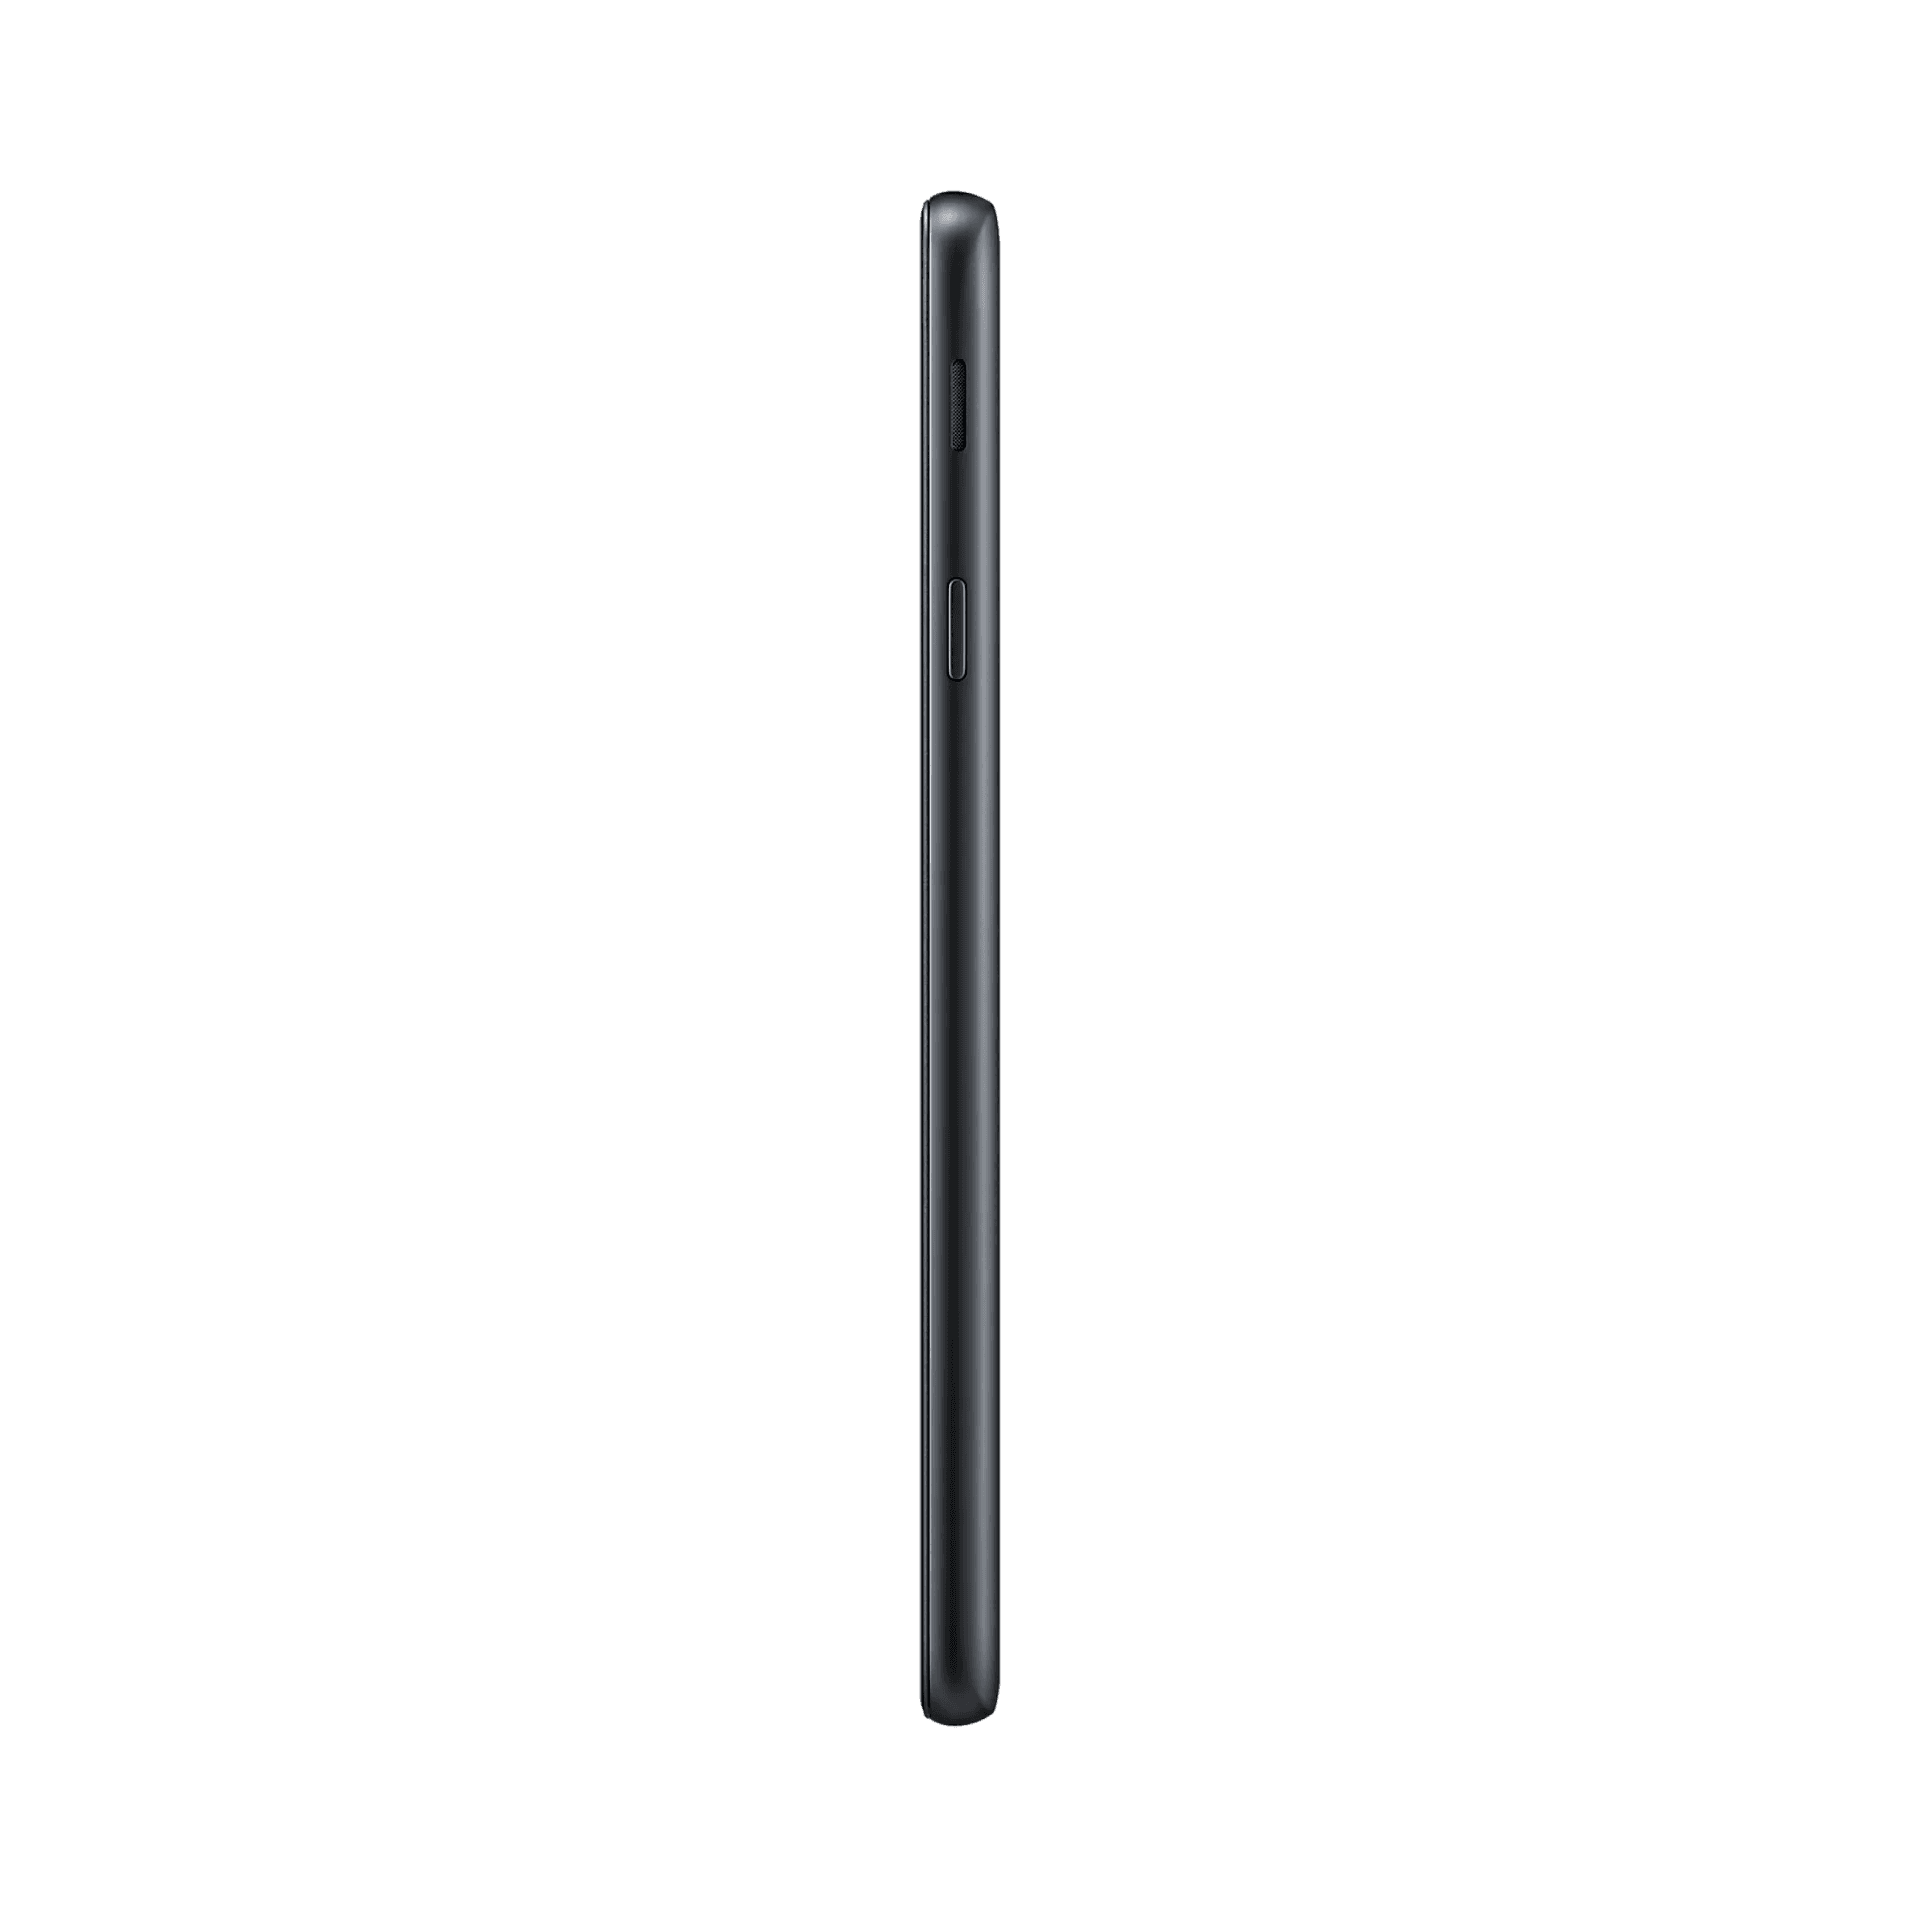 Samsung Galaxy J7 Pro - 16 GB - Siyah